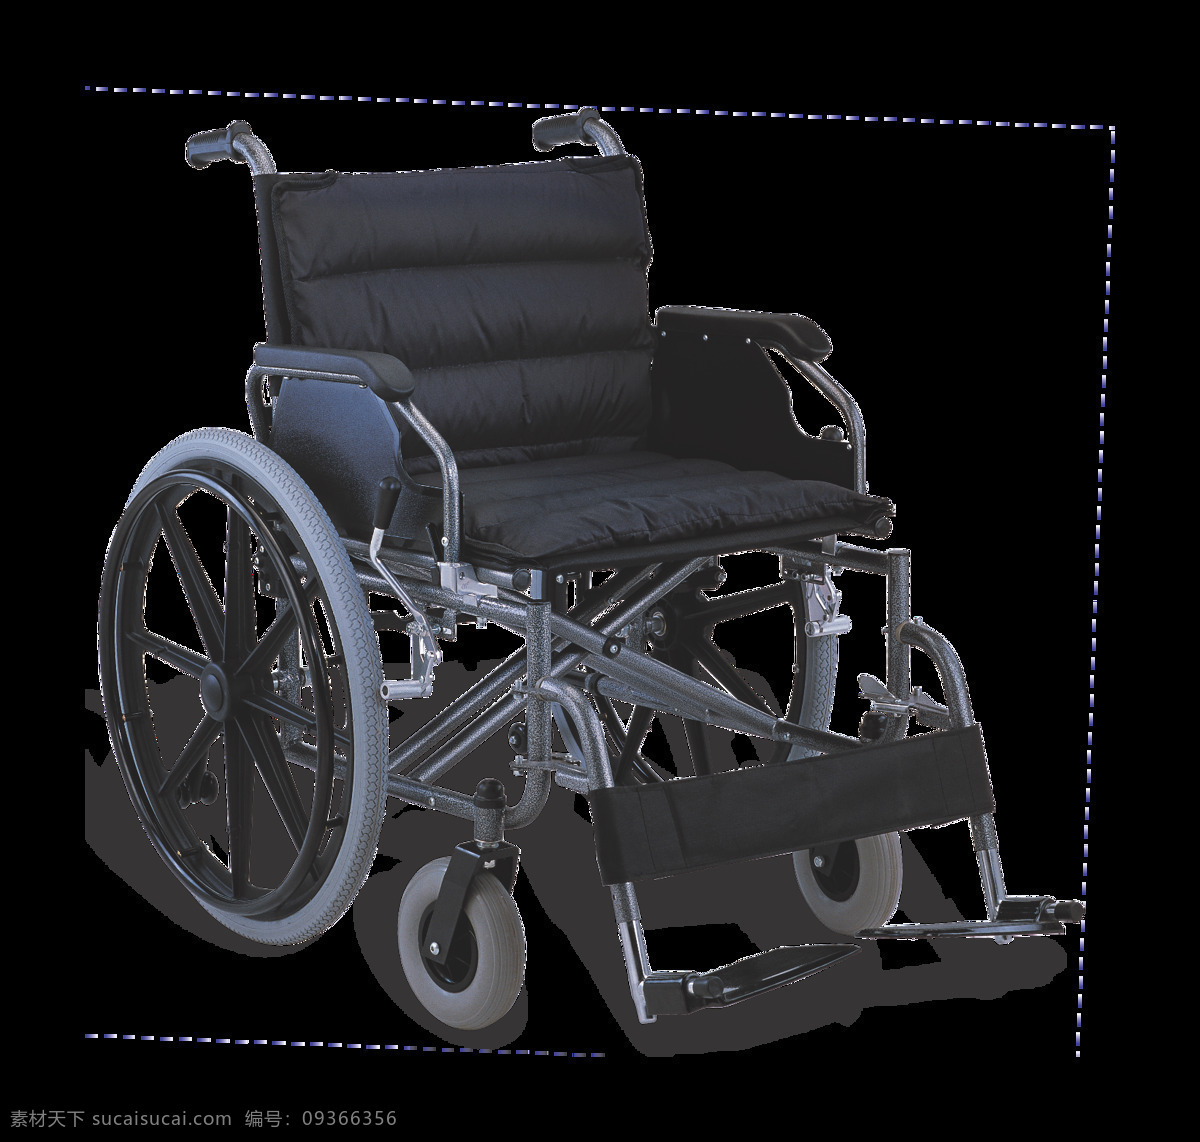 黑色 轮椅 免 抠 透明 图 层 木轮椅 越野轮椅 小轮轮椅 手摇轮椅 轮椅轮子 车载轮椅 老年轮椅 竞速轮椅 轮椅设计 残疾轮椅 折叠轮椅 智能轮椅 医院轮椅 轮椅图片